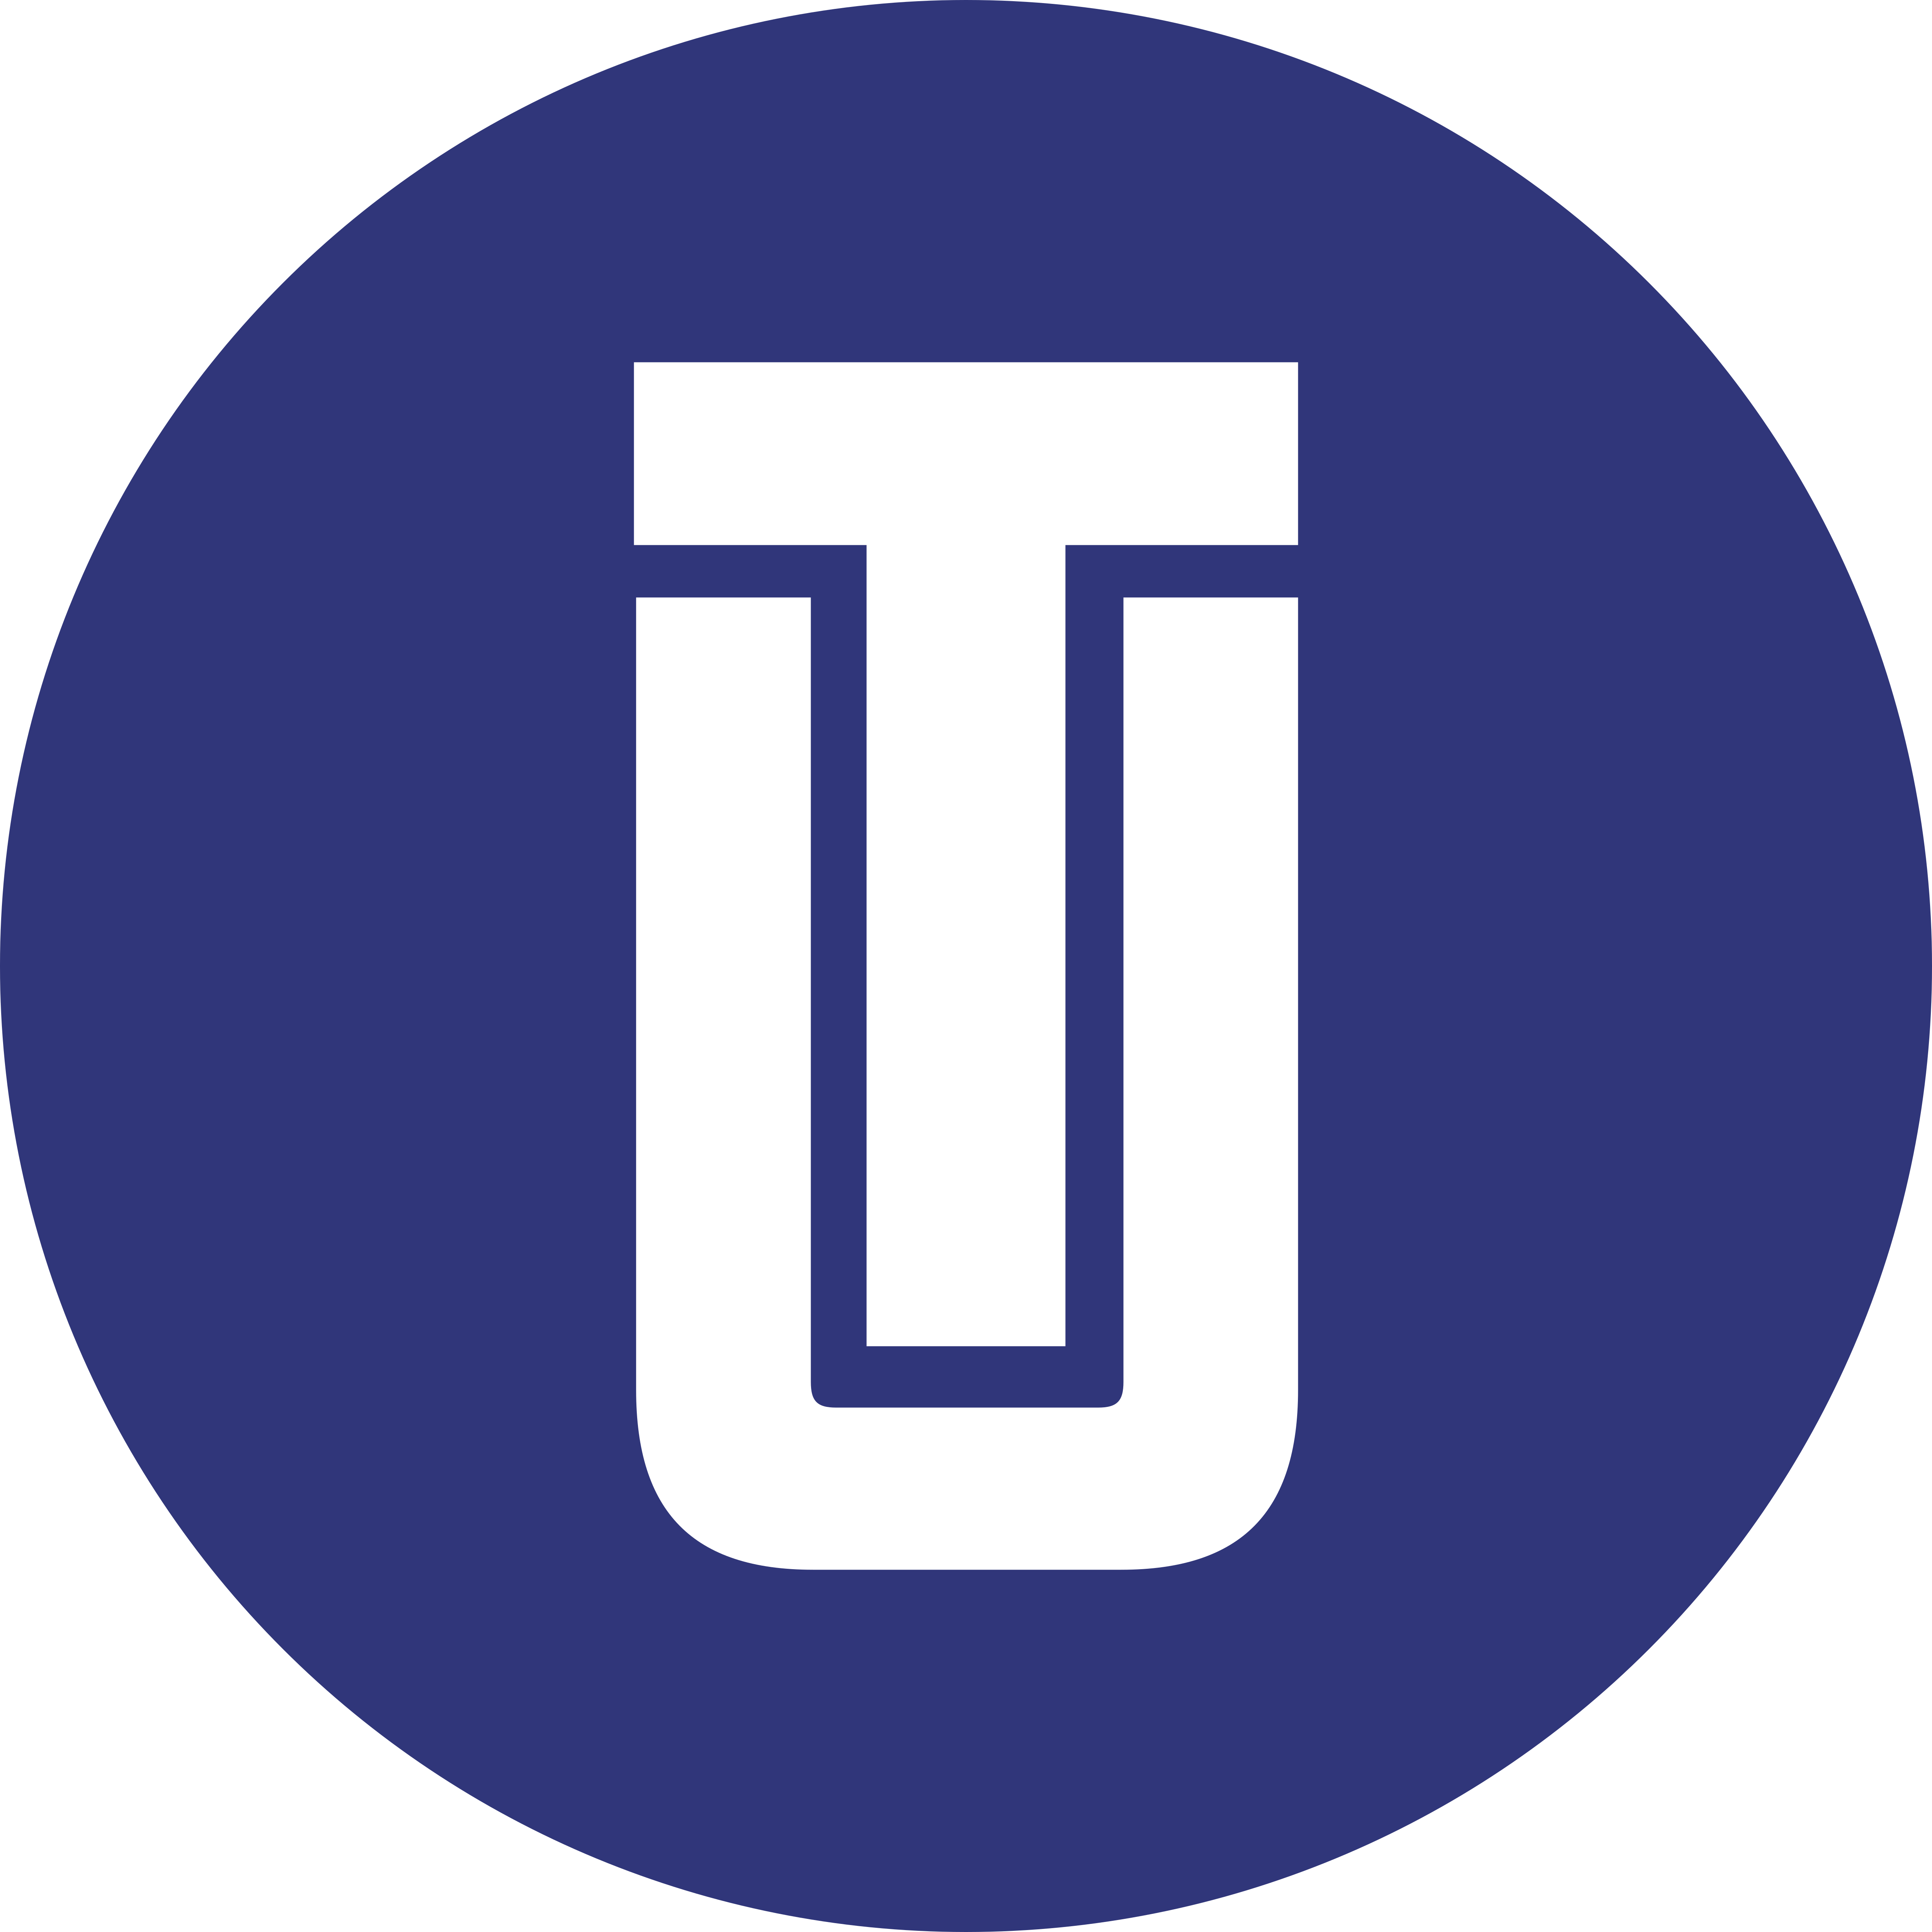 Utrust (UTK) Logo